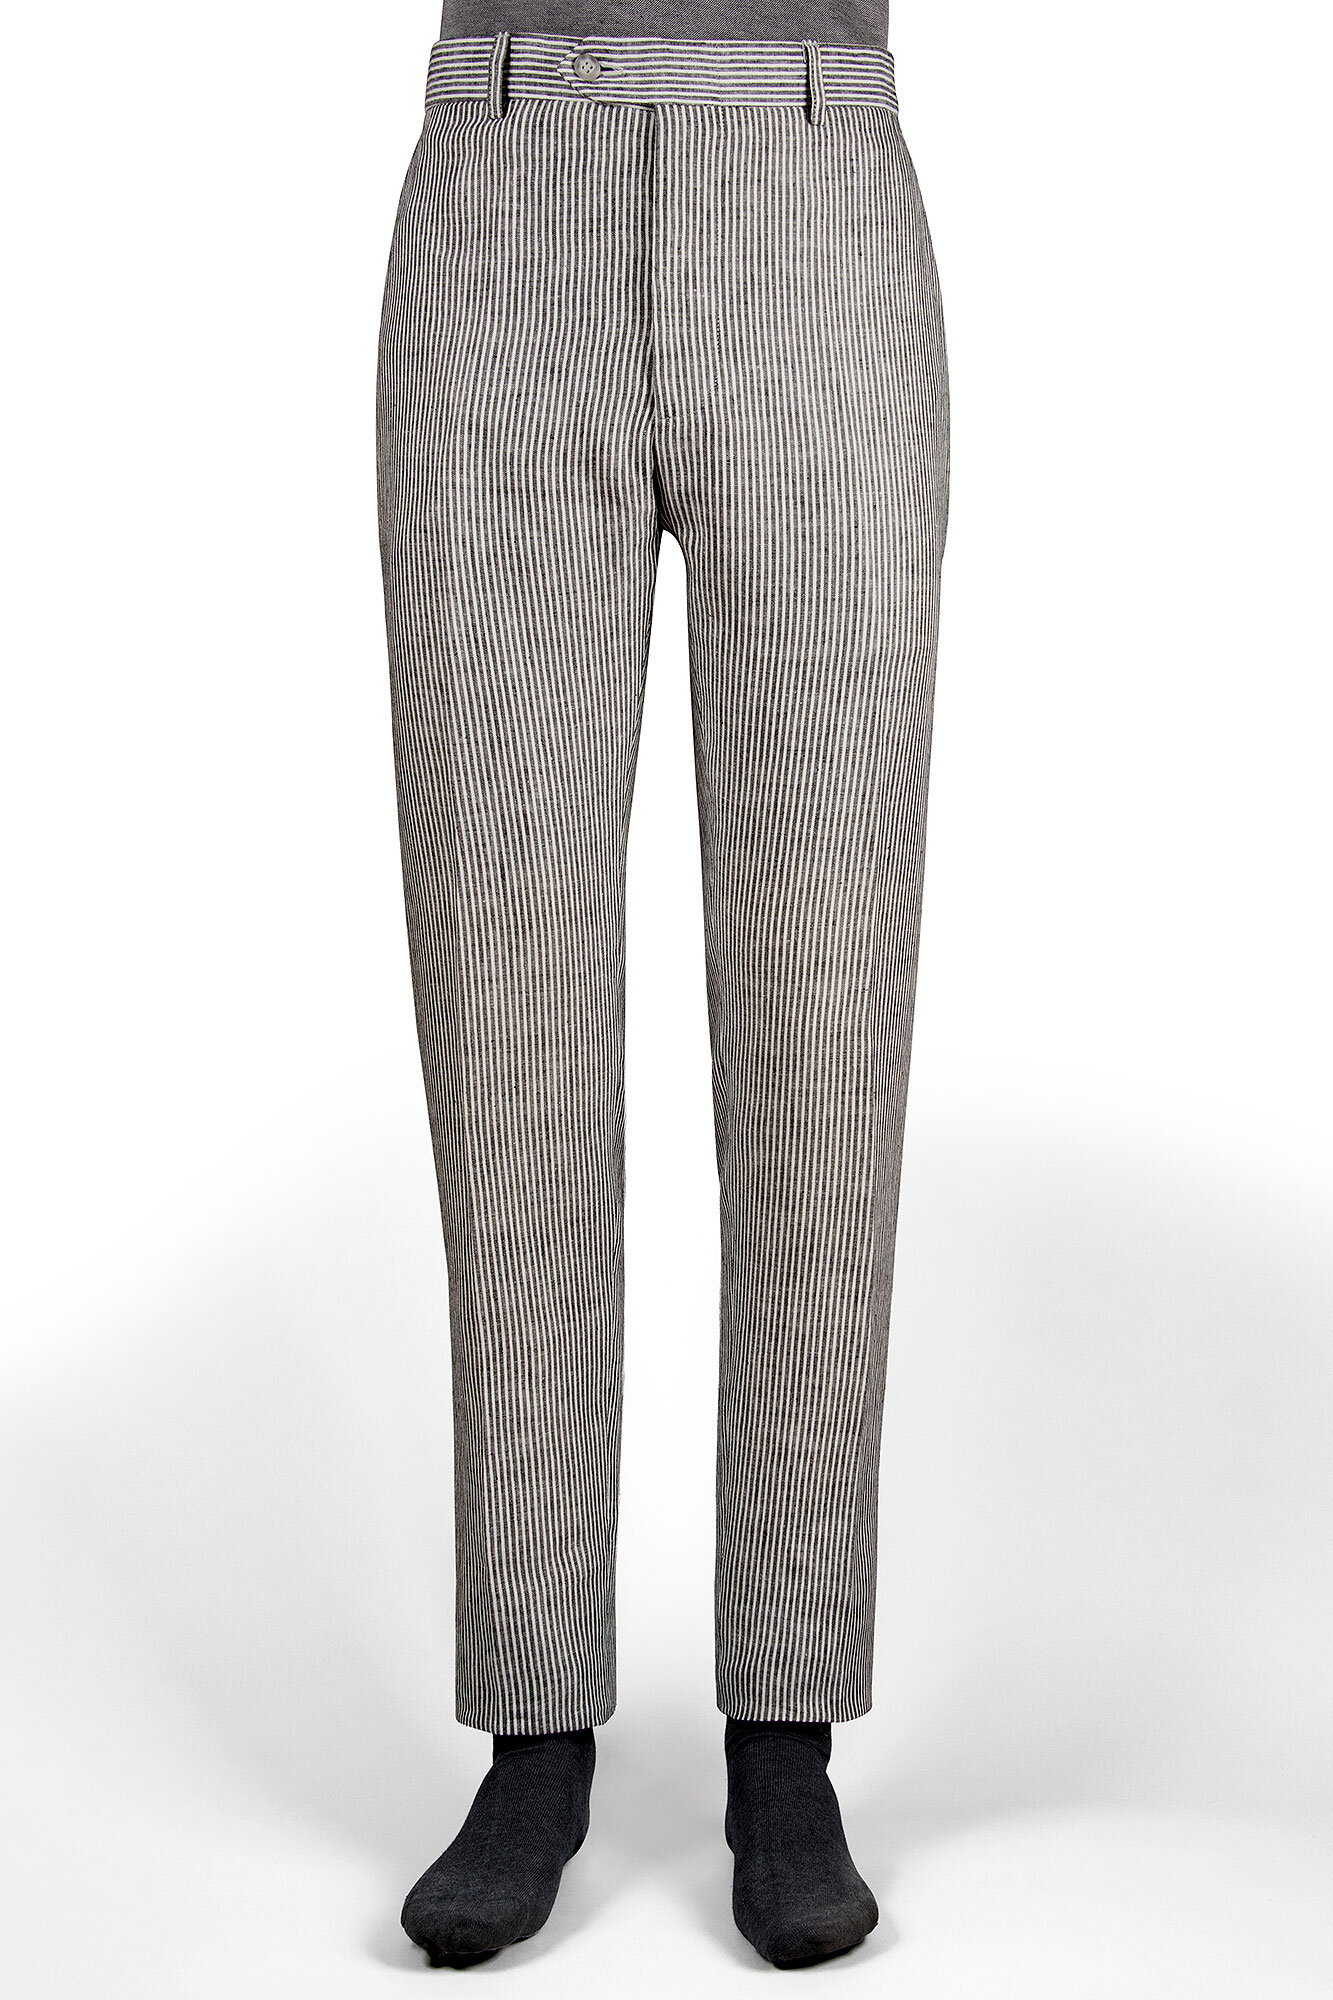 Pantalon de vestir slim fit rayas gris acero y blanco — Casa del Lino